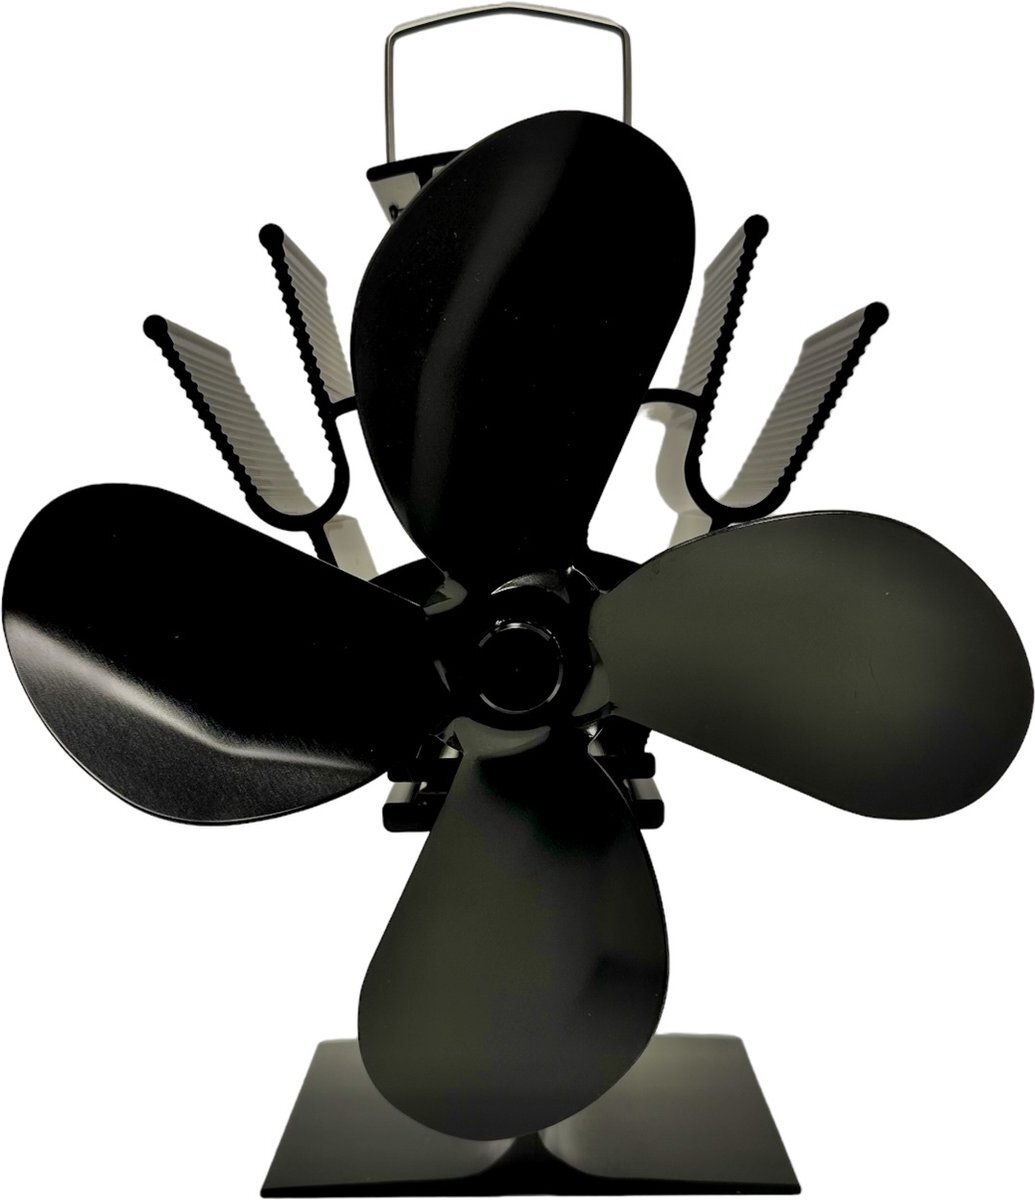 WOLFF MOUNT The Stove Fan by | 4-blads energie besparende haardventilator | Groot 19 cm | Extra curve propeller bladen voor meer lucht verplaatsing | Kachelventilator Haardventilator Eco fan ventilator